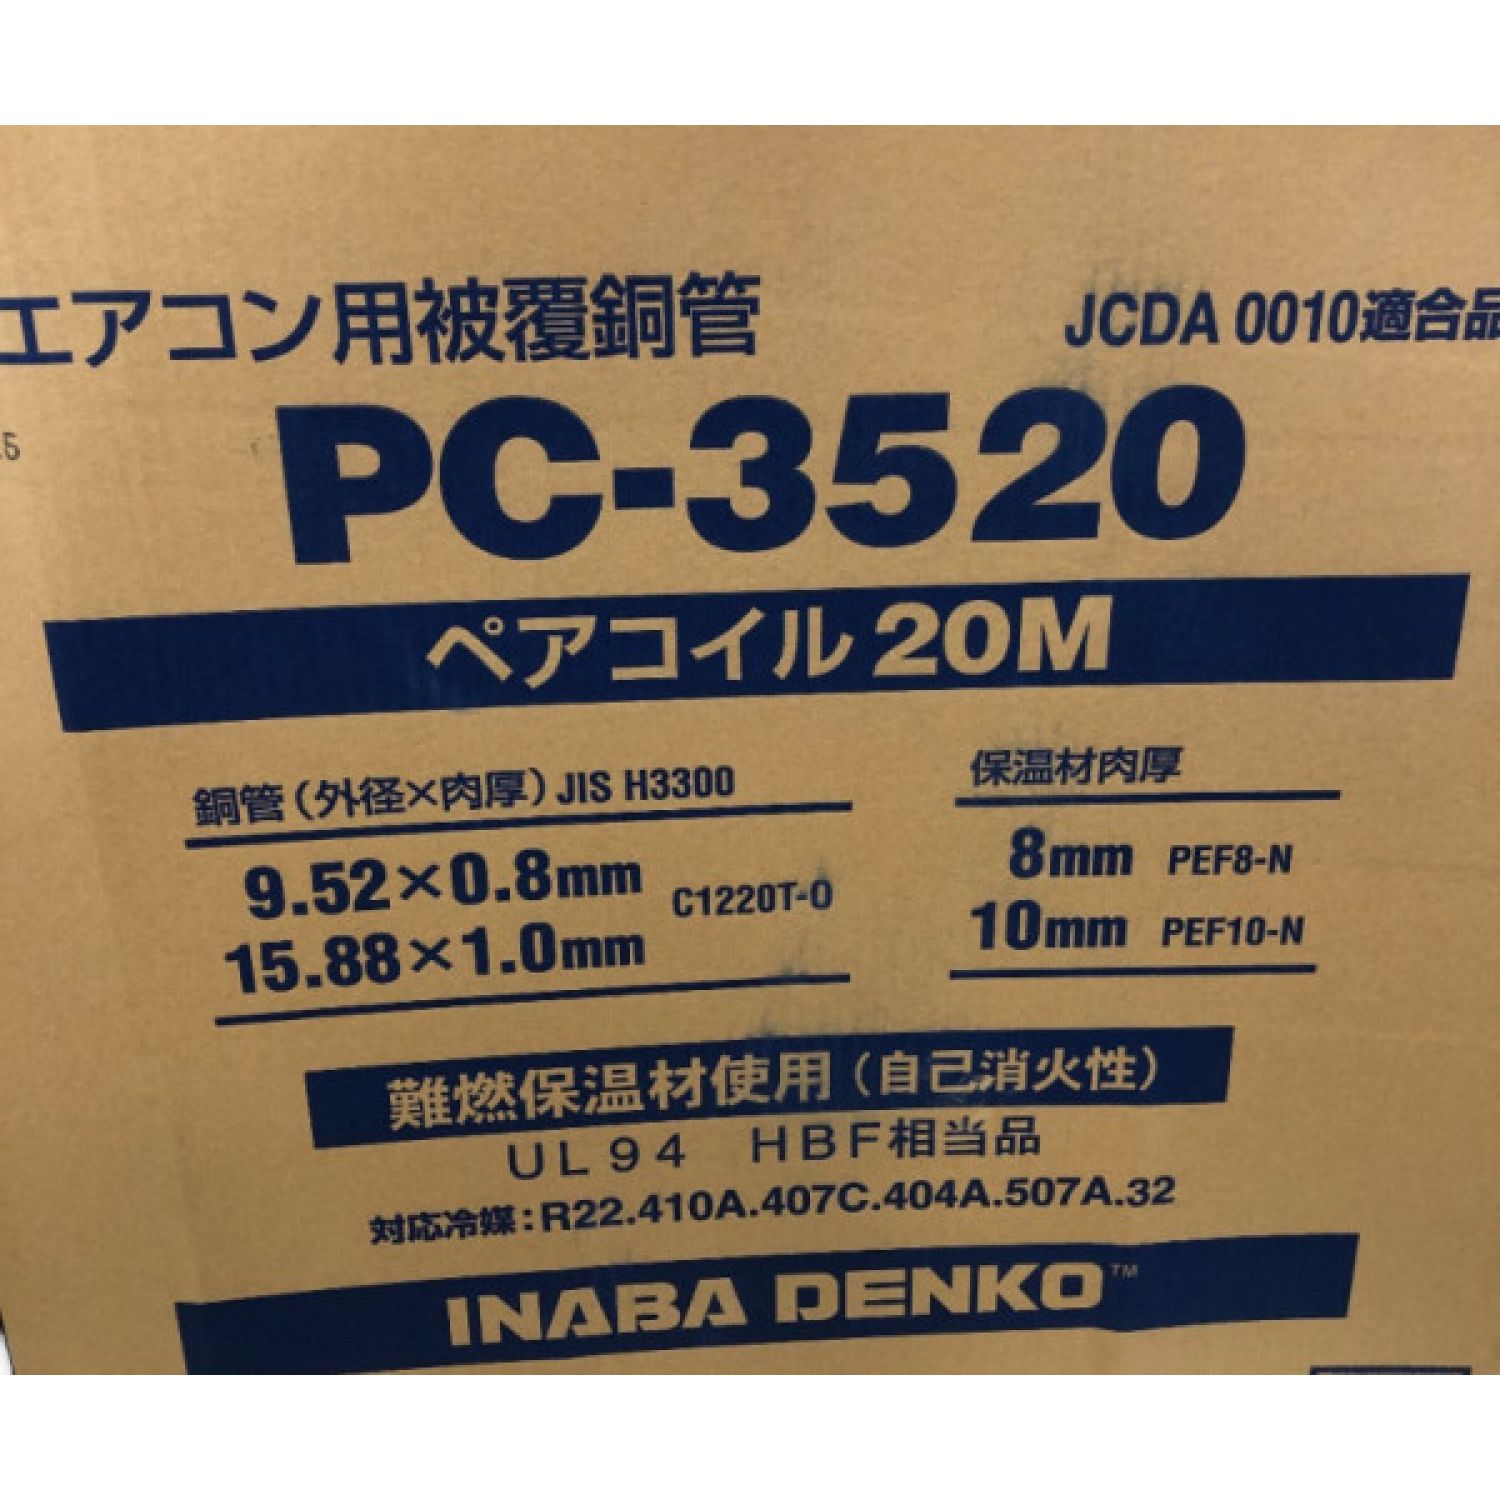 INABA DENKO ペアコイル 2０m エアコン用被覆銅管 PC-3520 Sランク